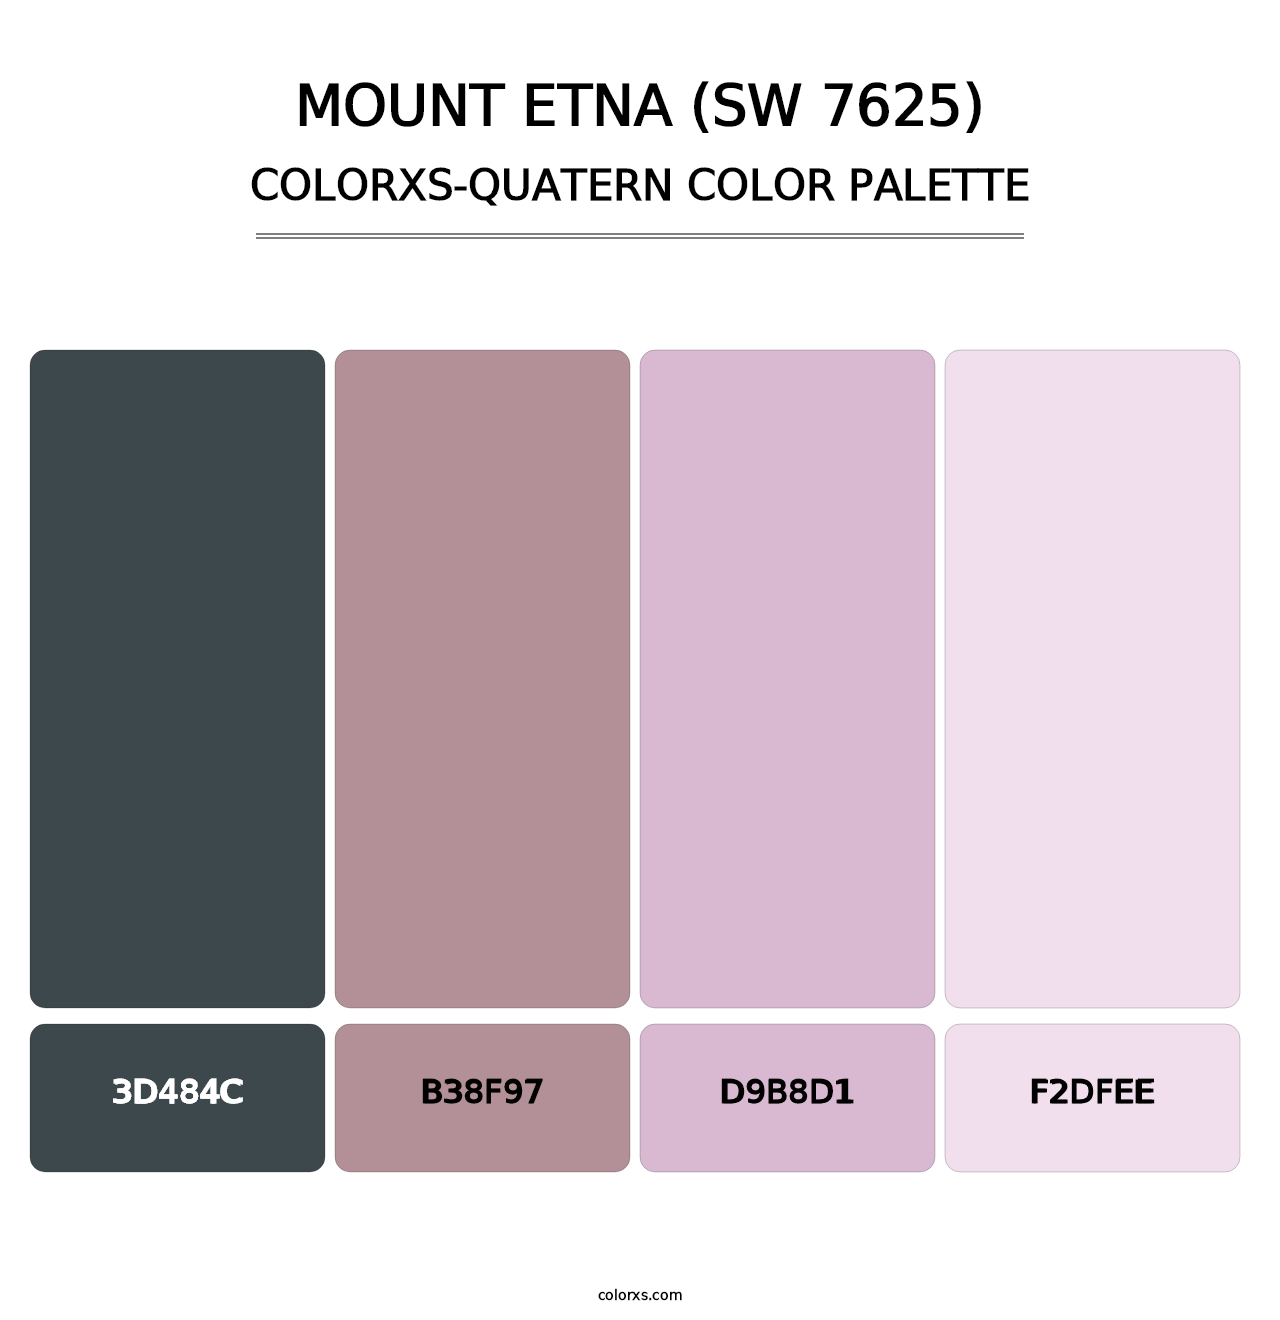 Mount Etna (SW 7625) - Colorxs Quatern Palette